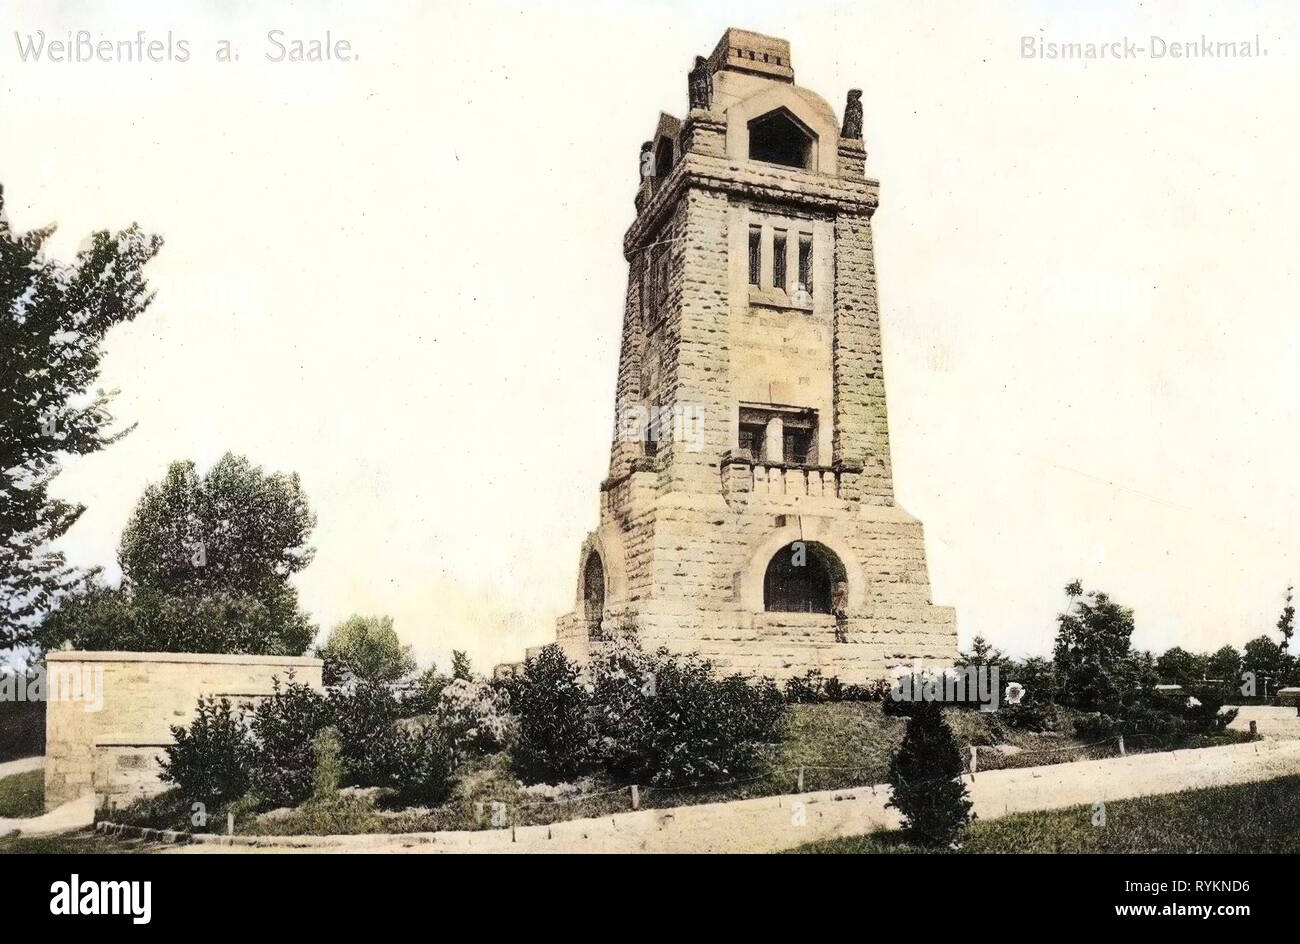 Bismarckturm (Weißenfels), 1912, Sachsen-Anhalt, Weißenfels, Bismarck, Denkmal, Deutschland Stockfoto